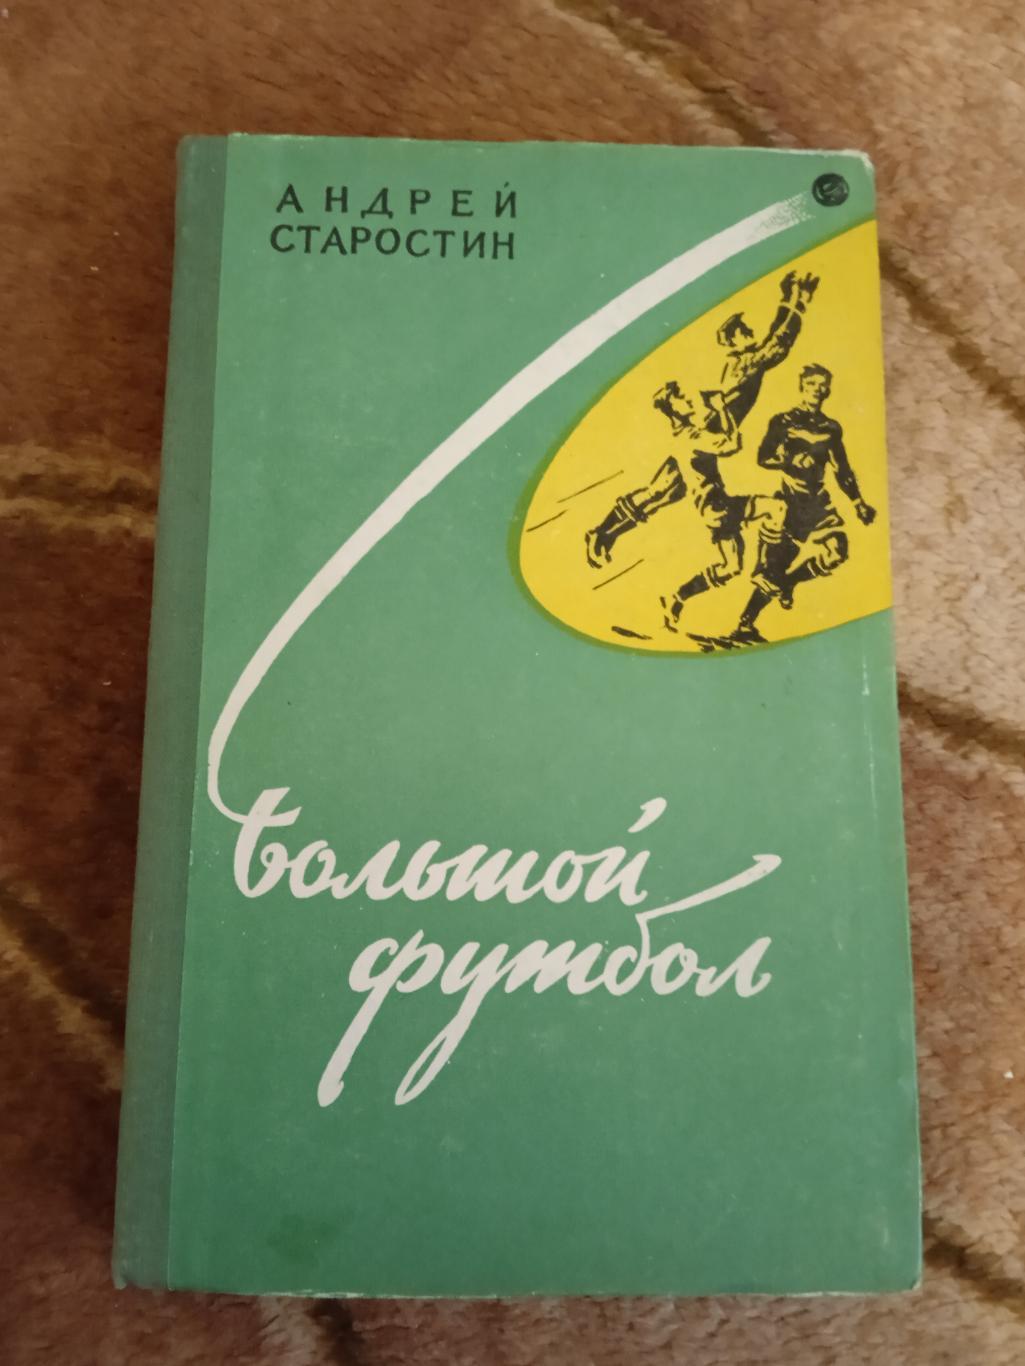 А.Старостин.Большой футбол.2-е изд.Молодая гвардия 1959 г.